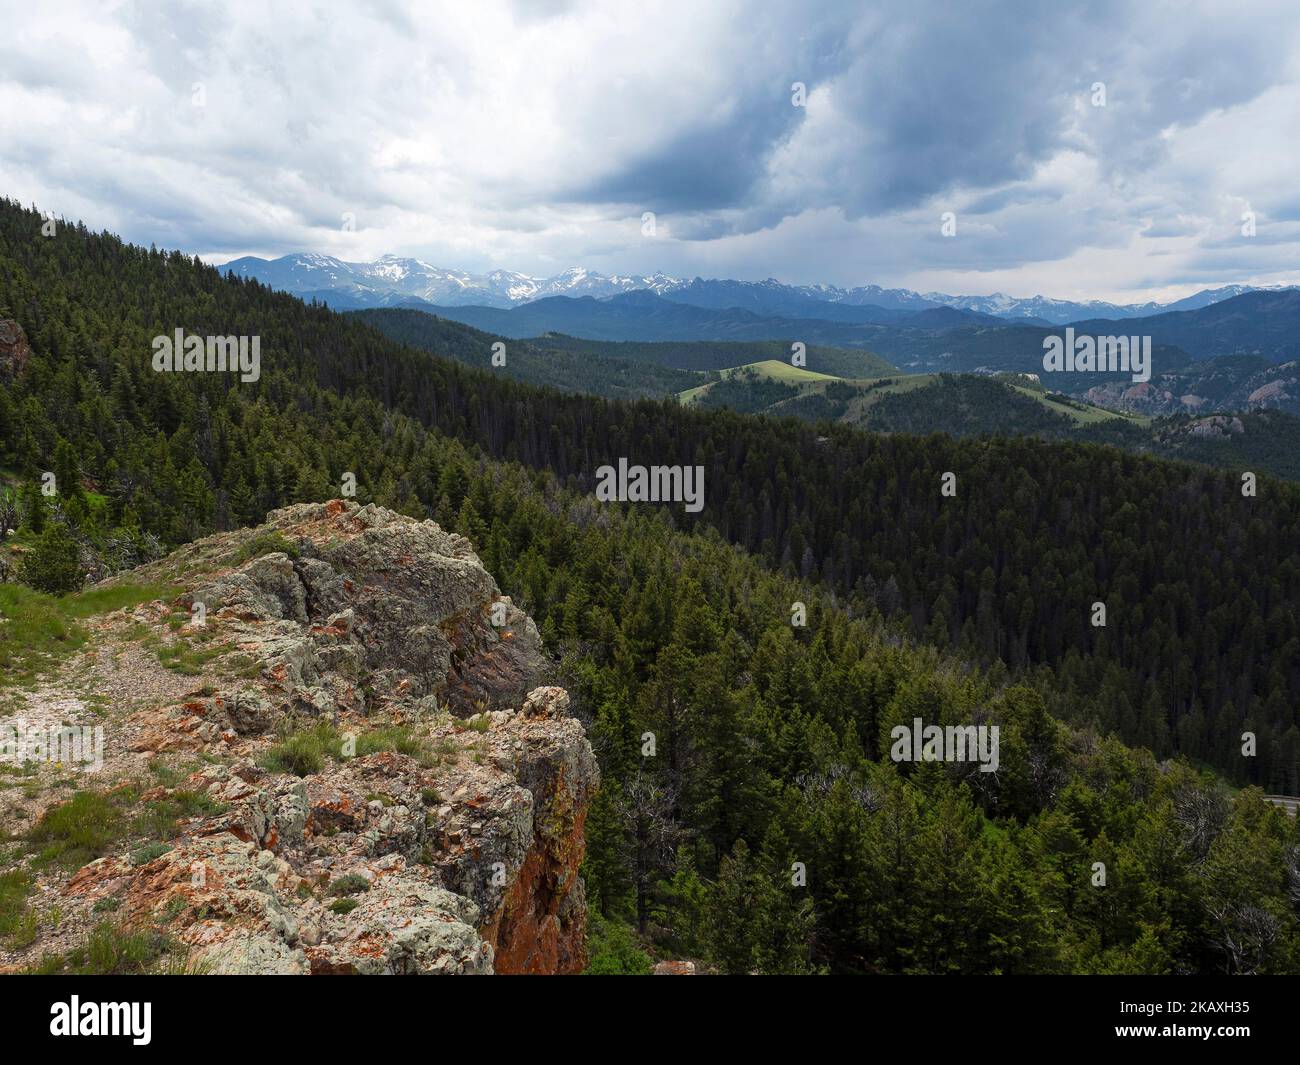 Schneebedeckte Berge der Absaroka Range vom Dead Indian Summit Overlook, Chief Joseph Scenic Highway, Wyoming, USA, Juli 2019 Stockfoto